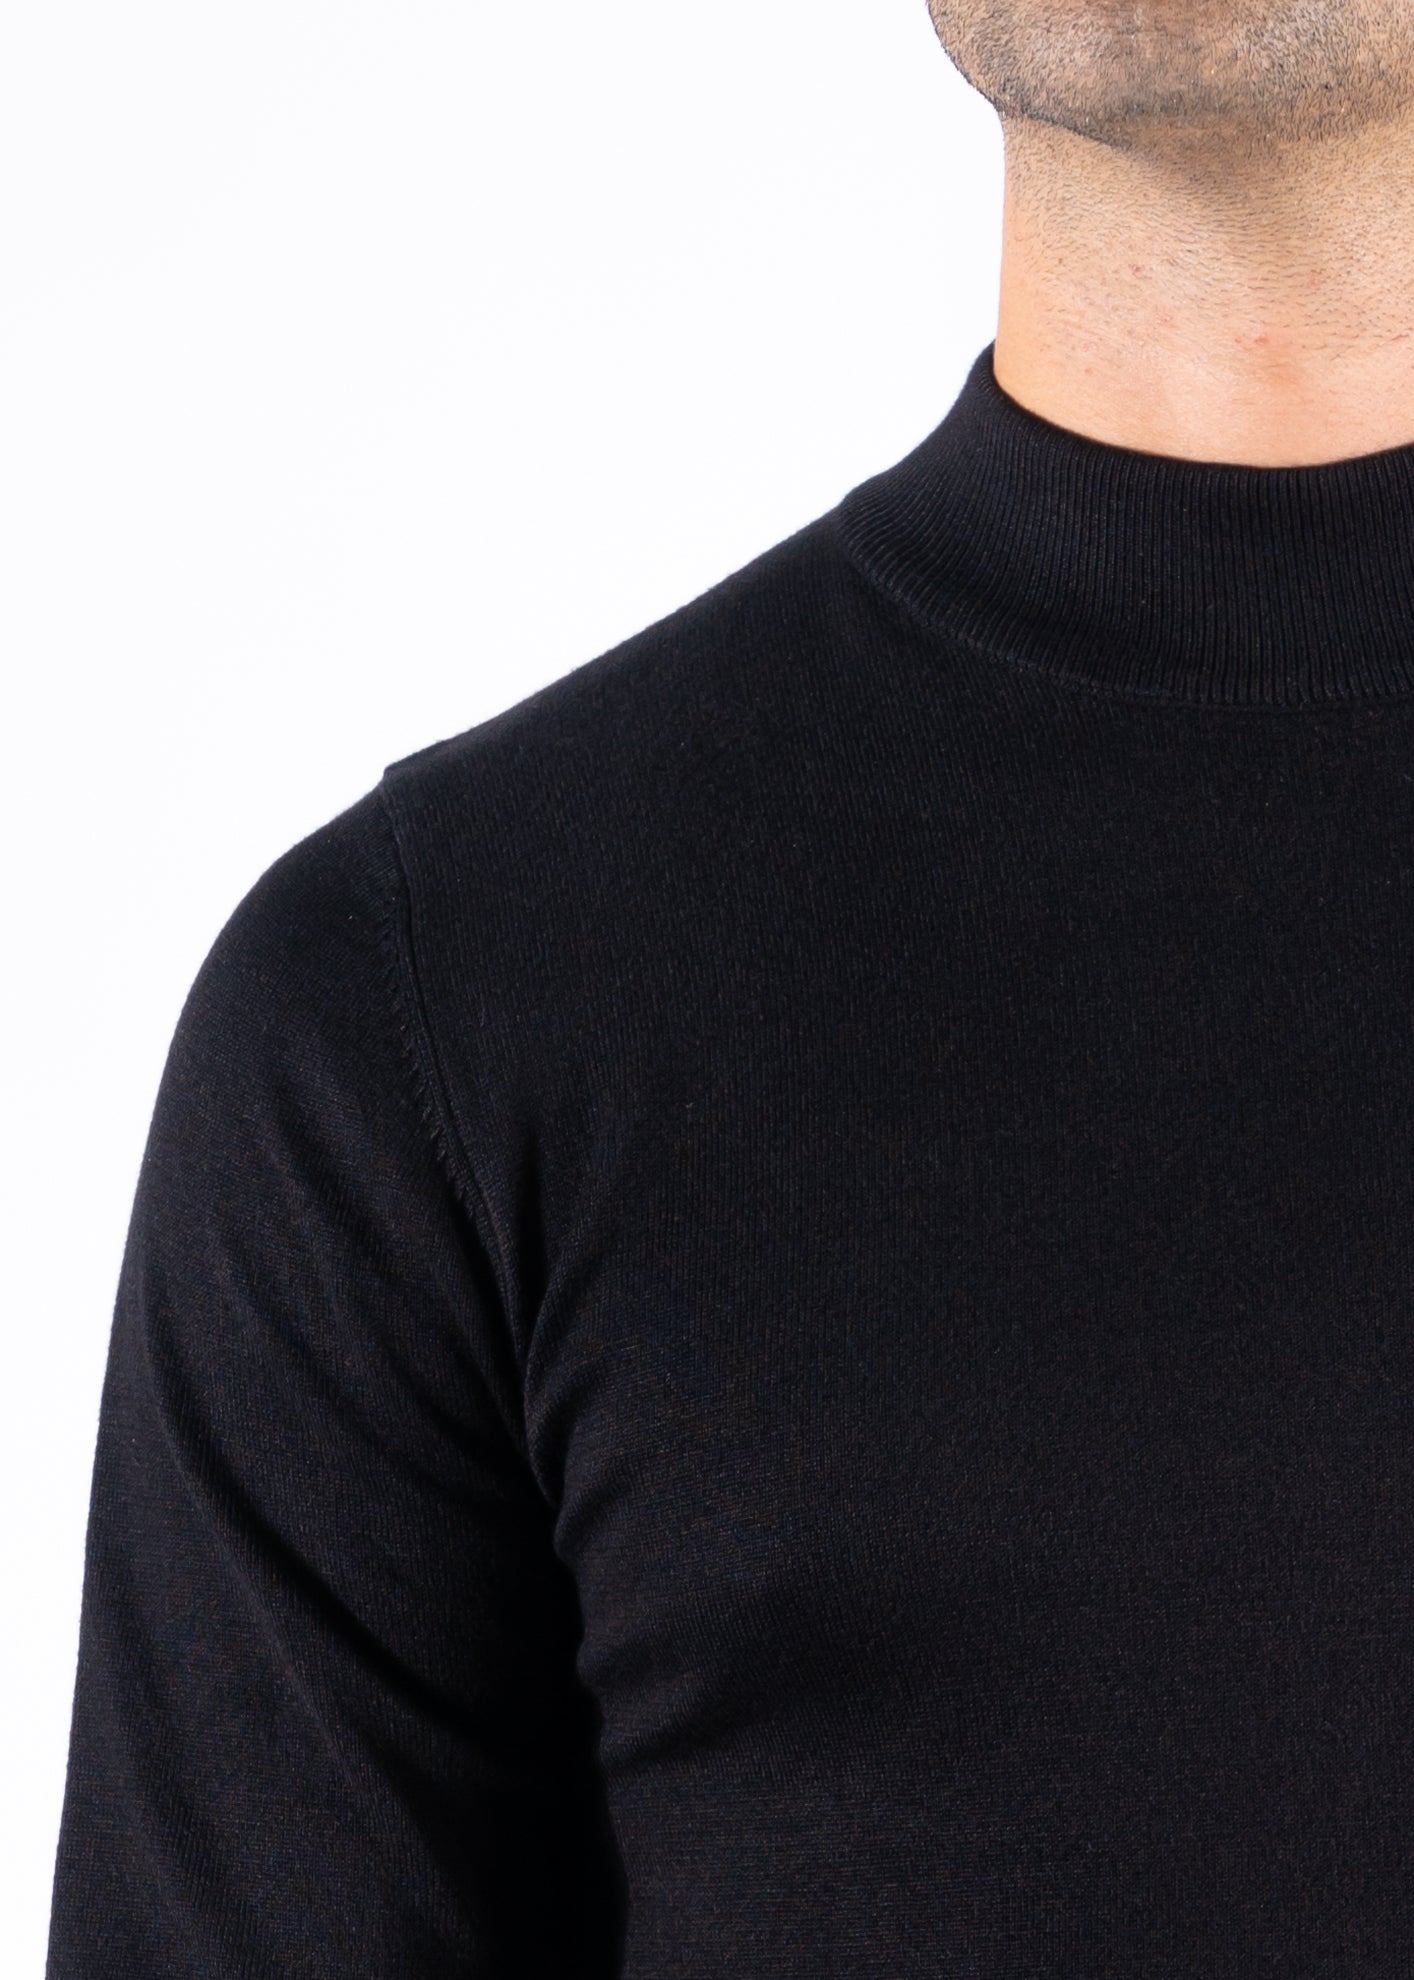 Turtleneck knitwear long sleeve black